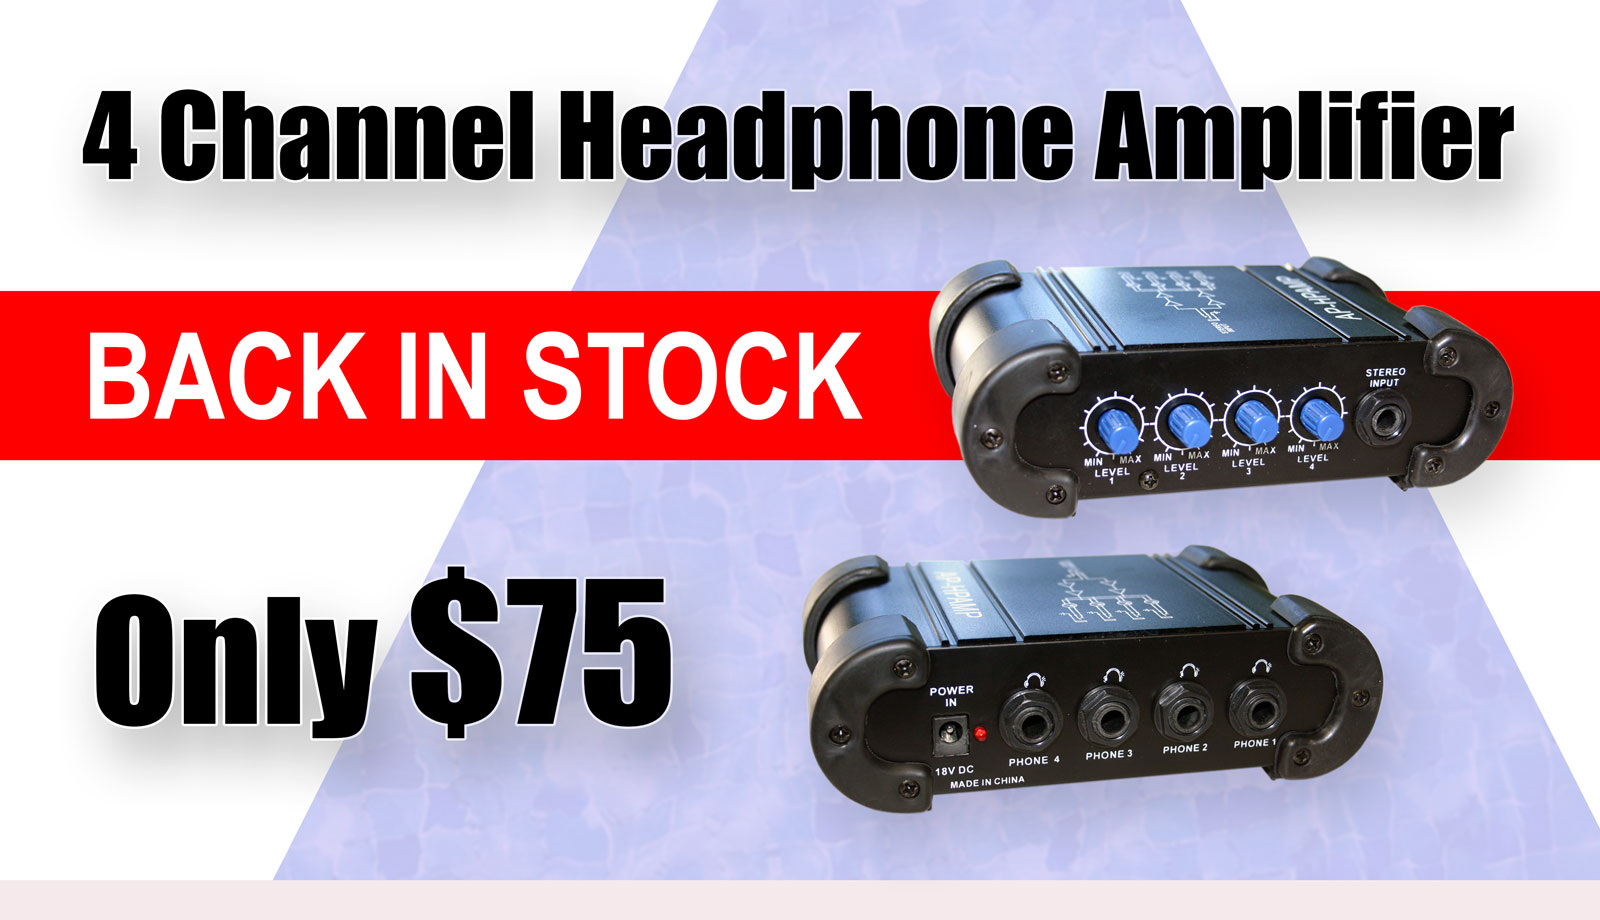 4 Channel Headphone Amplifier